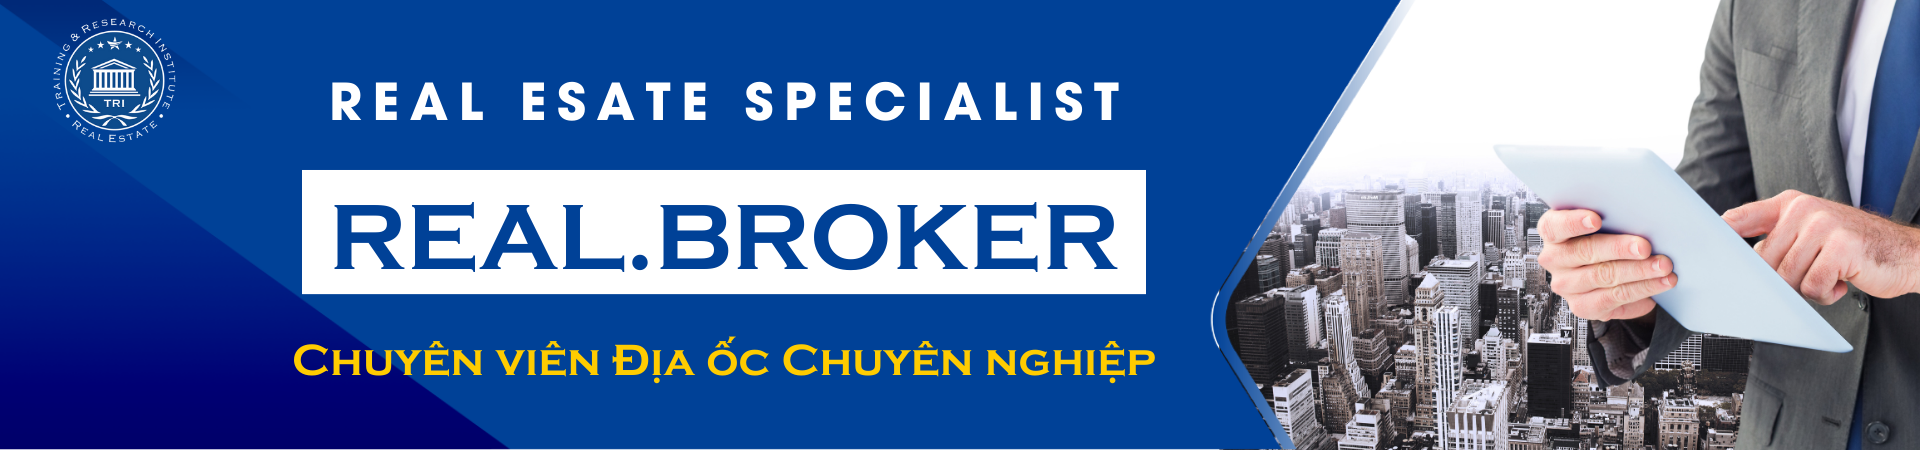 Real Broker Chuyen Vien Dia Oc Chuyen Nghiep